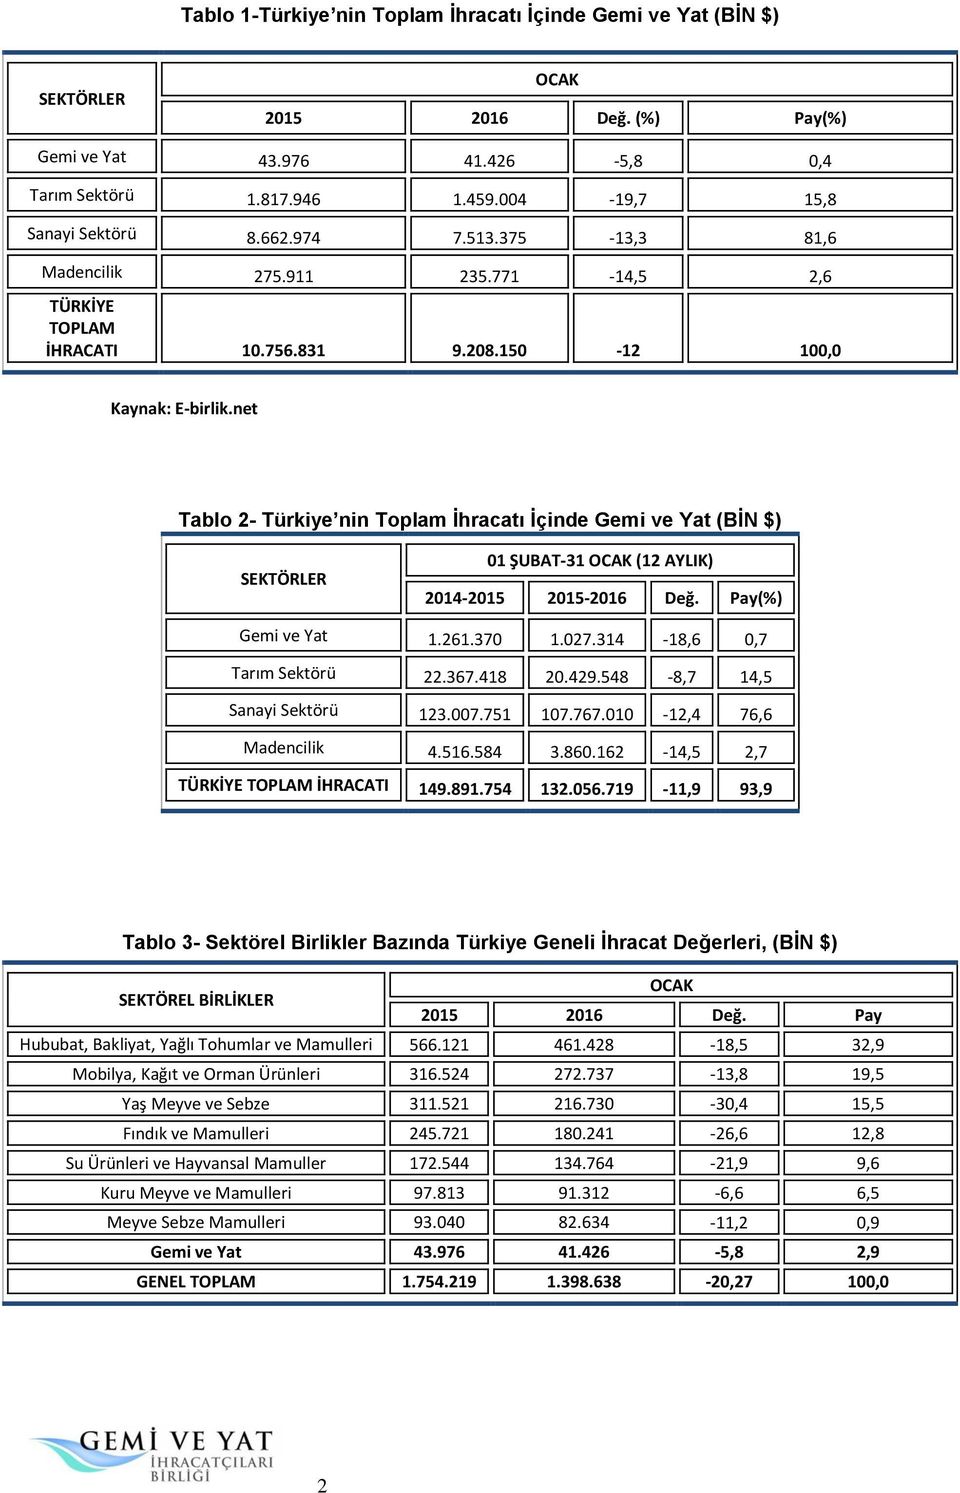 150-12 100,0 Tablo 2- Türkiye nin Toplam İhracatı İçinde Gemi ve Yat (BİN $) SEKTÖRLER 01 ŞUBAT-31 (12 AYLIK) 2014-2015 2015-2016 Değ. Pay(%) Gemi ve Yat 1.261.370 1.027.314-18,6 0,7 Tarım Sektörü 22.